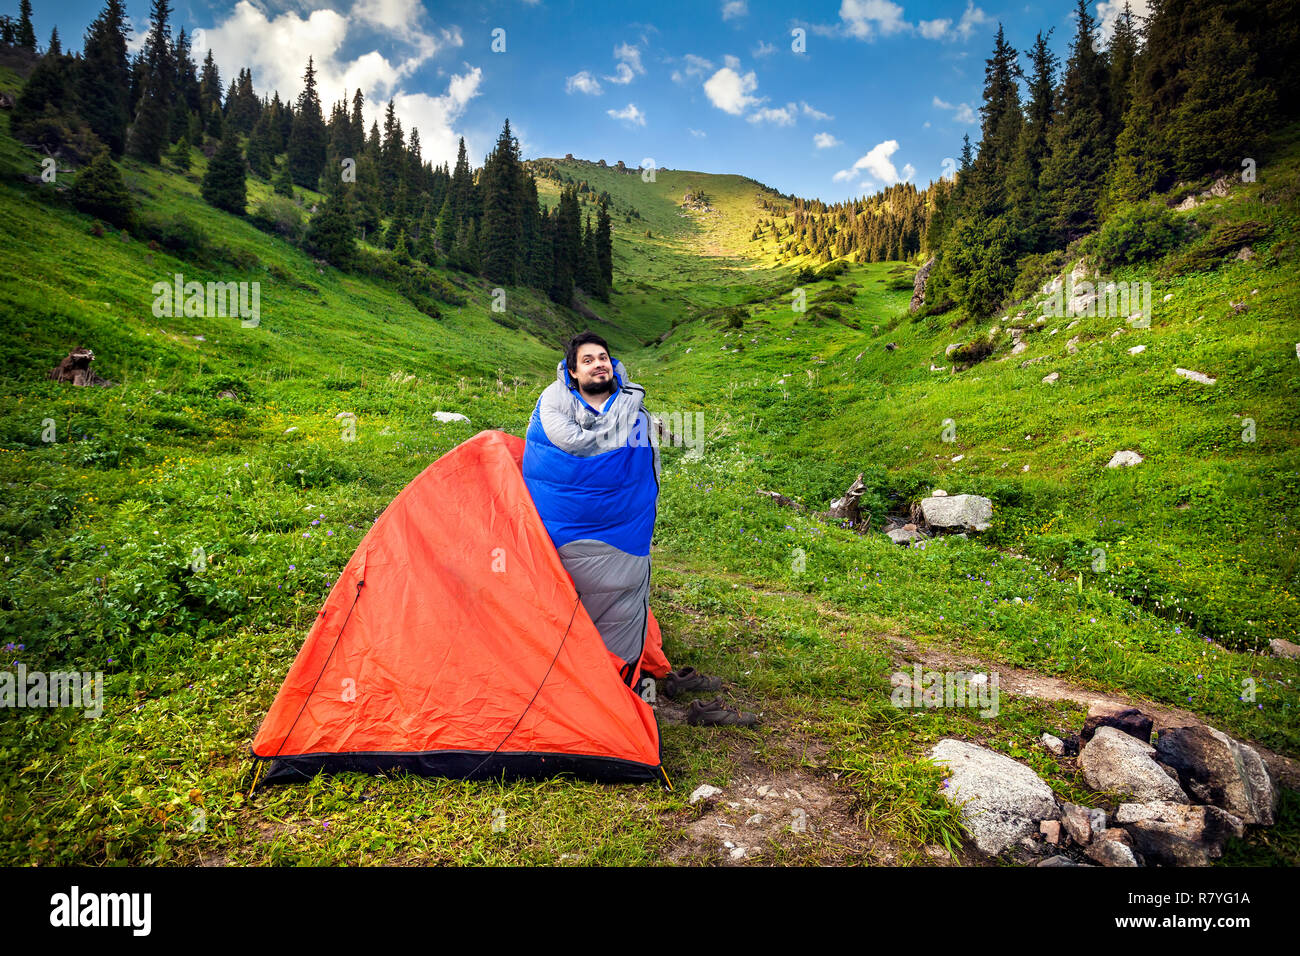 Turista nel sacco a pelo vicino a Orange tenda in montagna in Kazakistan e in Asia centrale Foto Stock